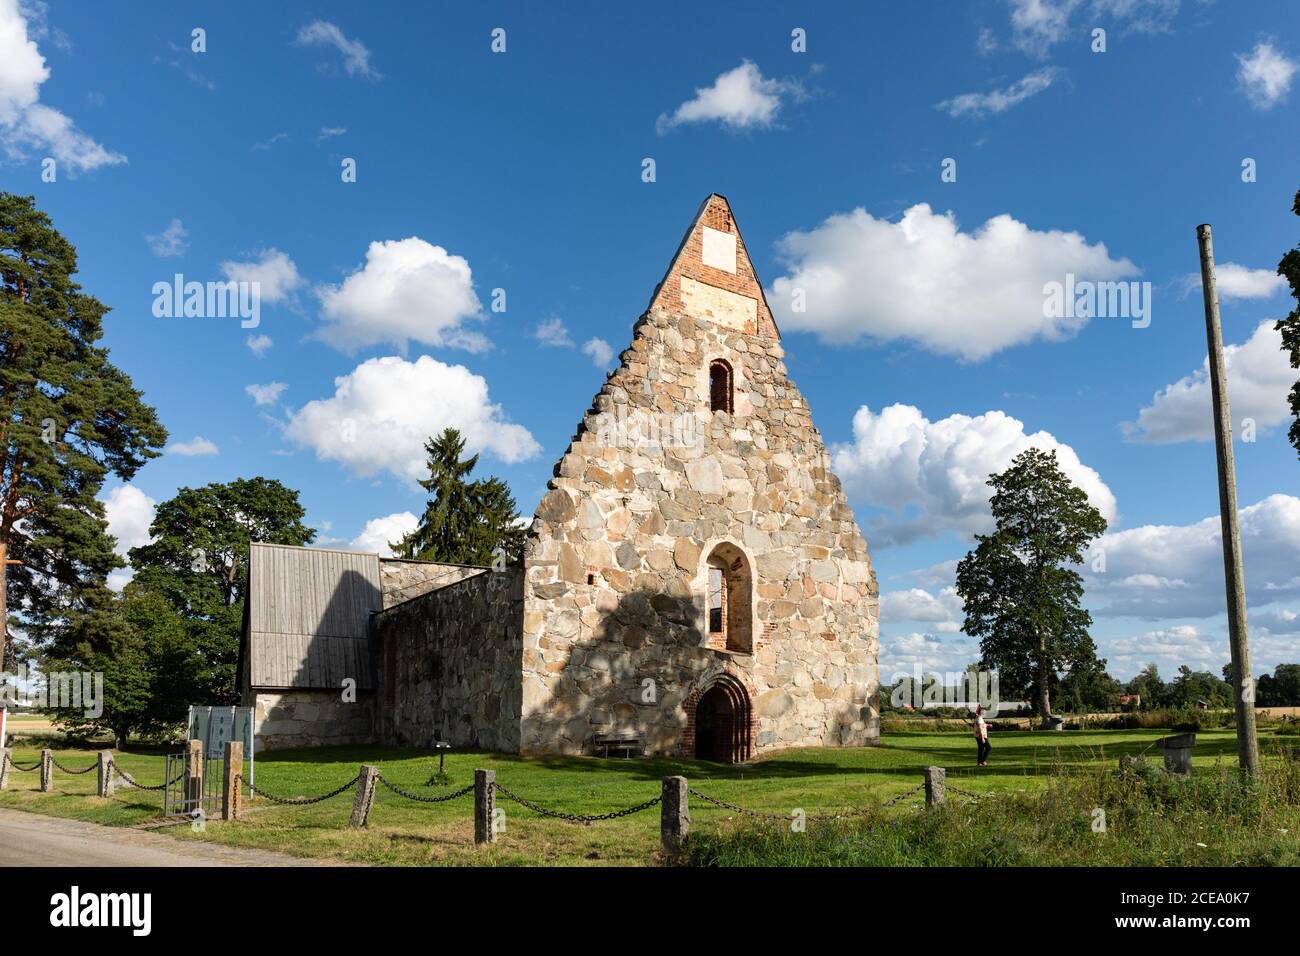 Ruins of medieval stone church Pyhän Mikaelin kirkko, Church of St. Michael, or Pälkäneen rauniokirkko in Pälkäne, Finland Stock Photo